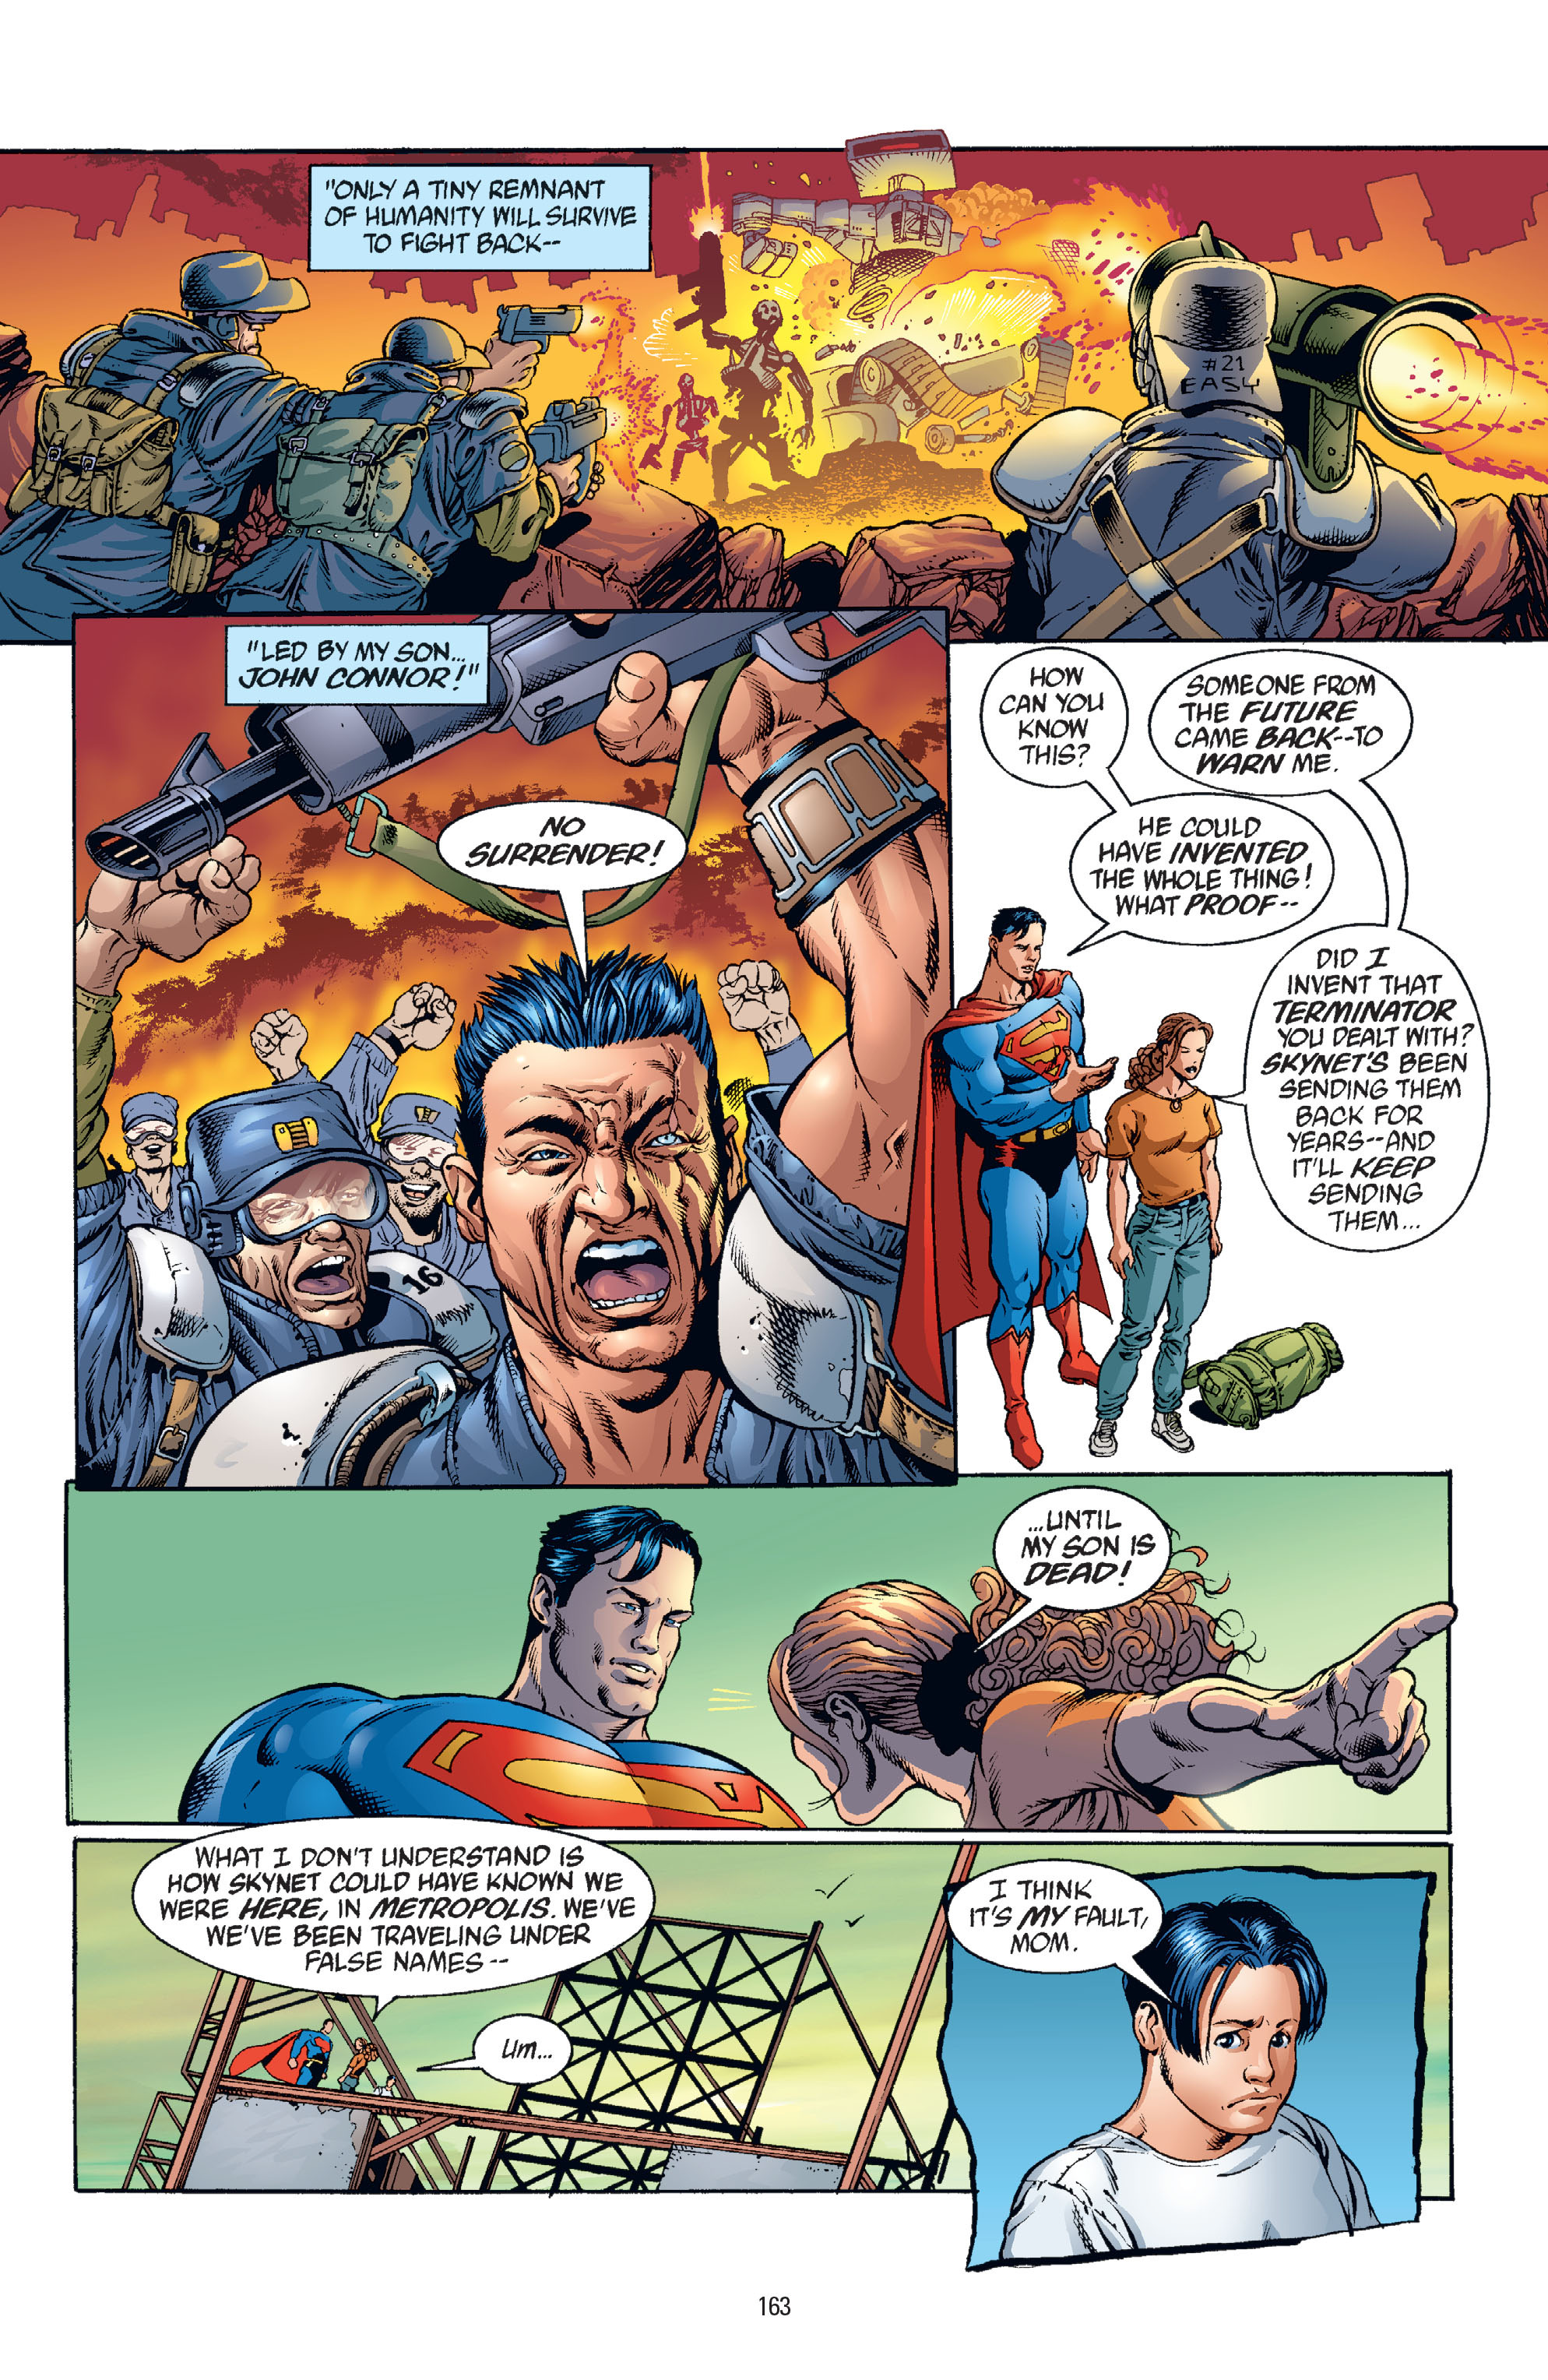 DC Comics/Dark Horse Comics: Justice League Full #1 - English 159